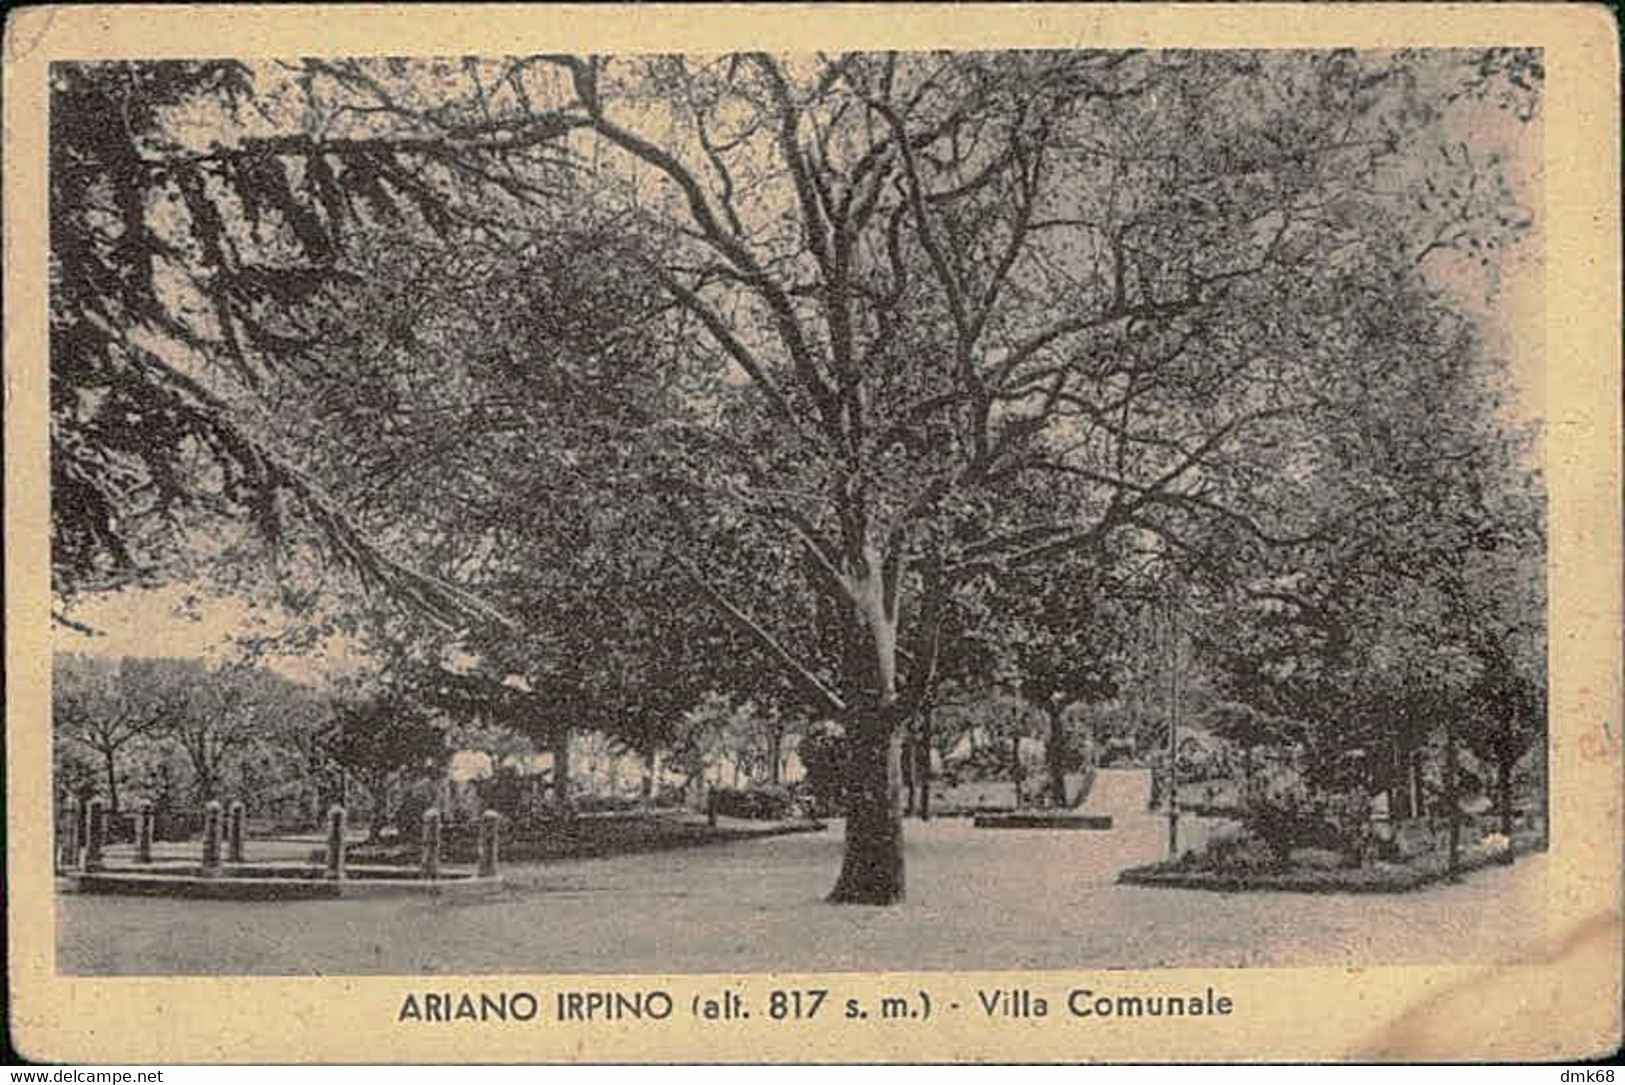 ARIANO IRPINO ( AVELLINO ) VILLA COMUNALE - EDIZ. CAPOBIANCO - 1940s (12691) - Avellino